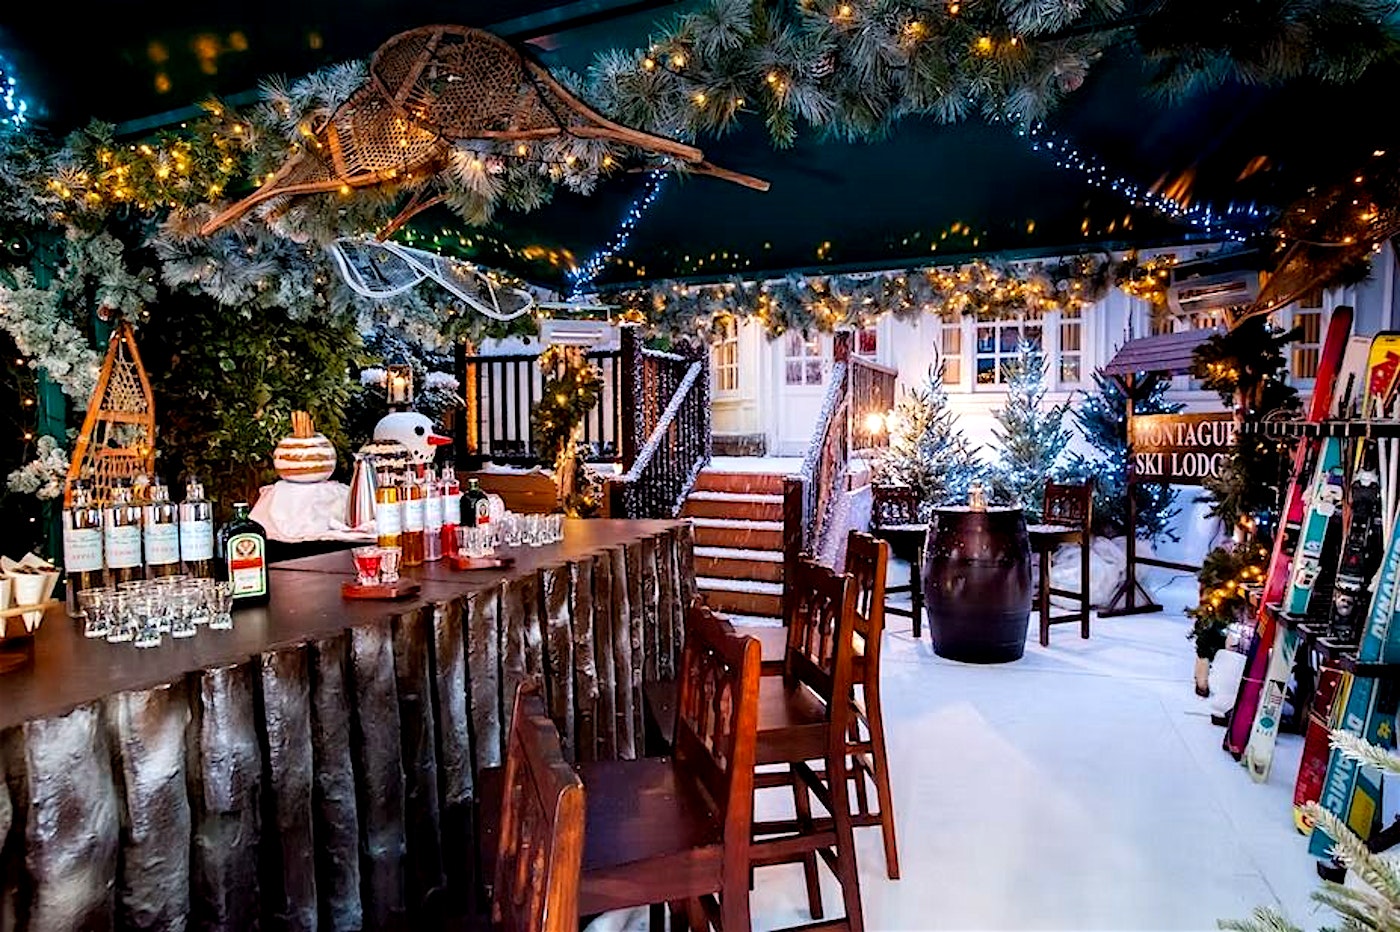 Montague Ski Lodge, Christmas party venues